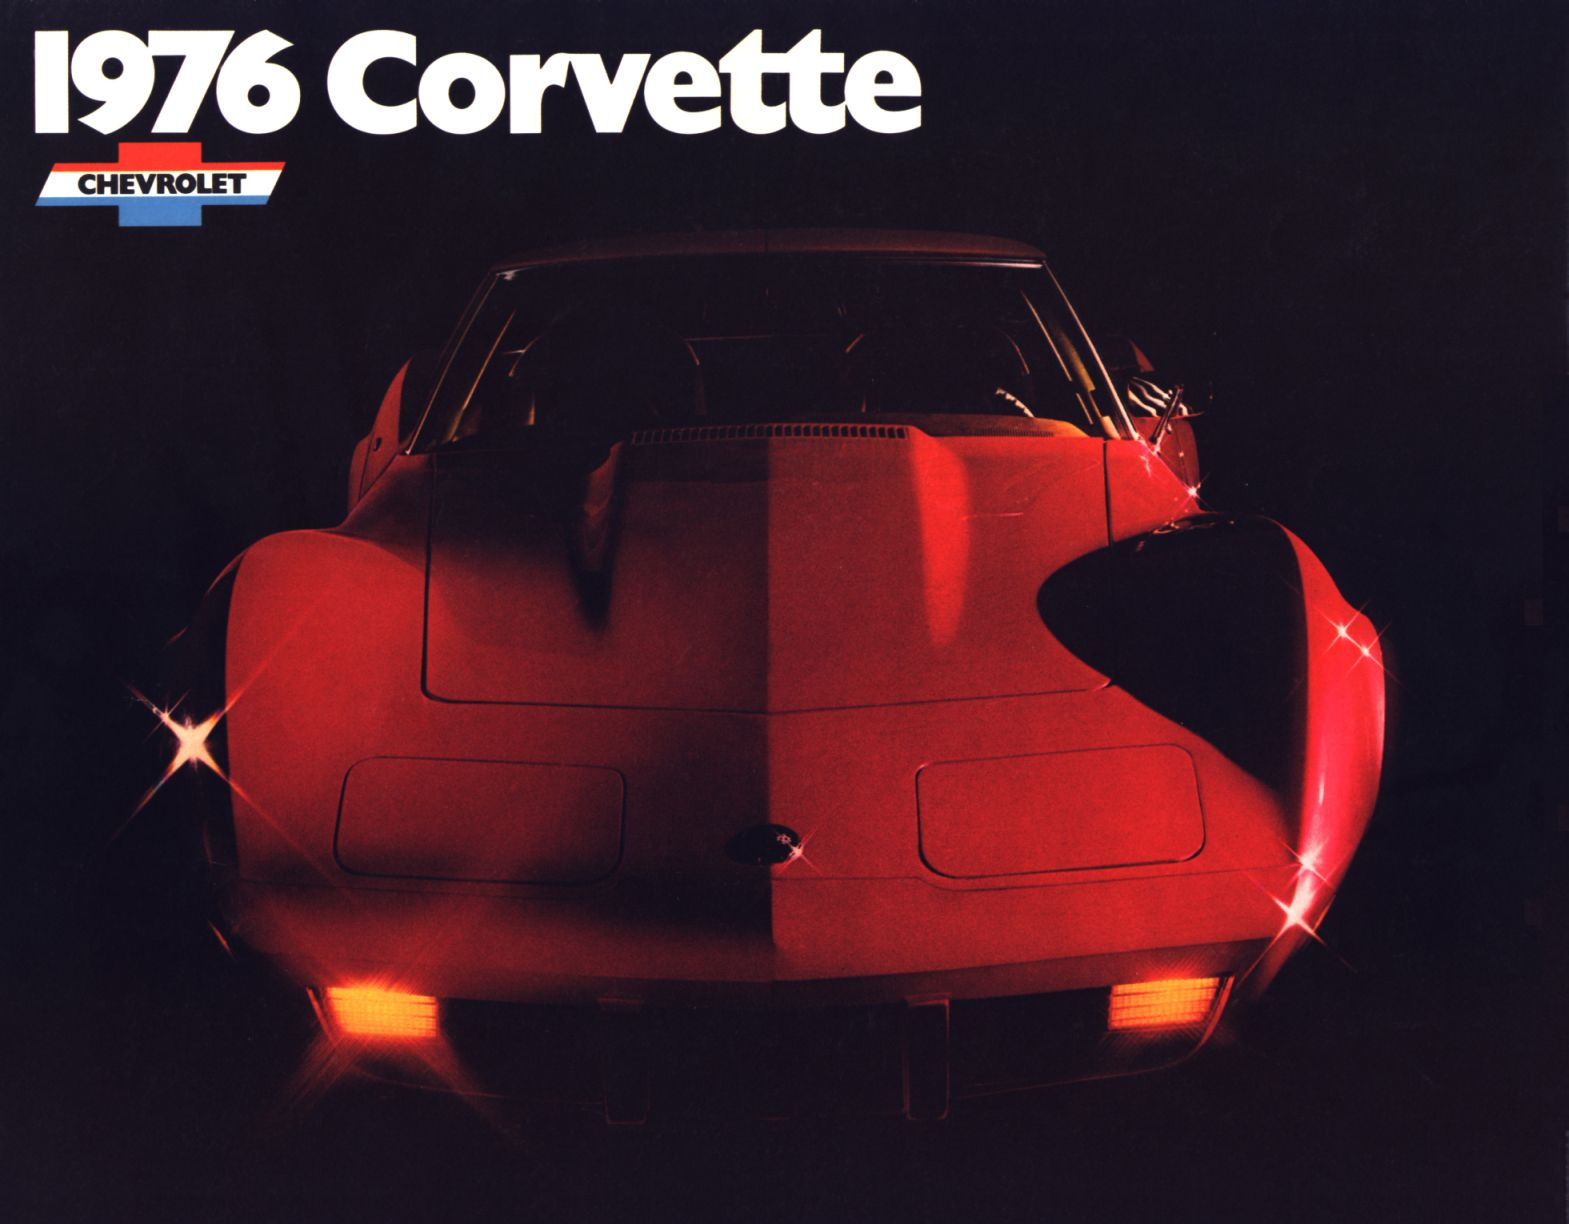 1976 Chevrolet Corvette-01